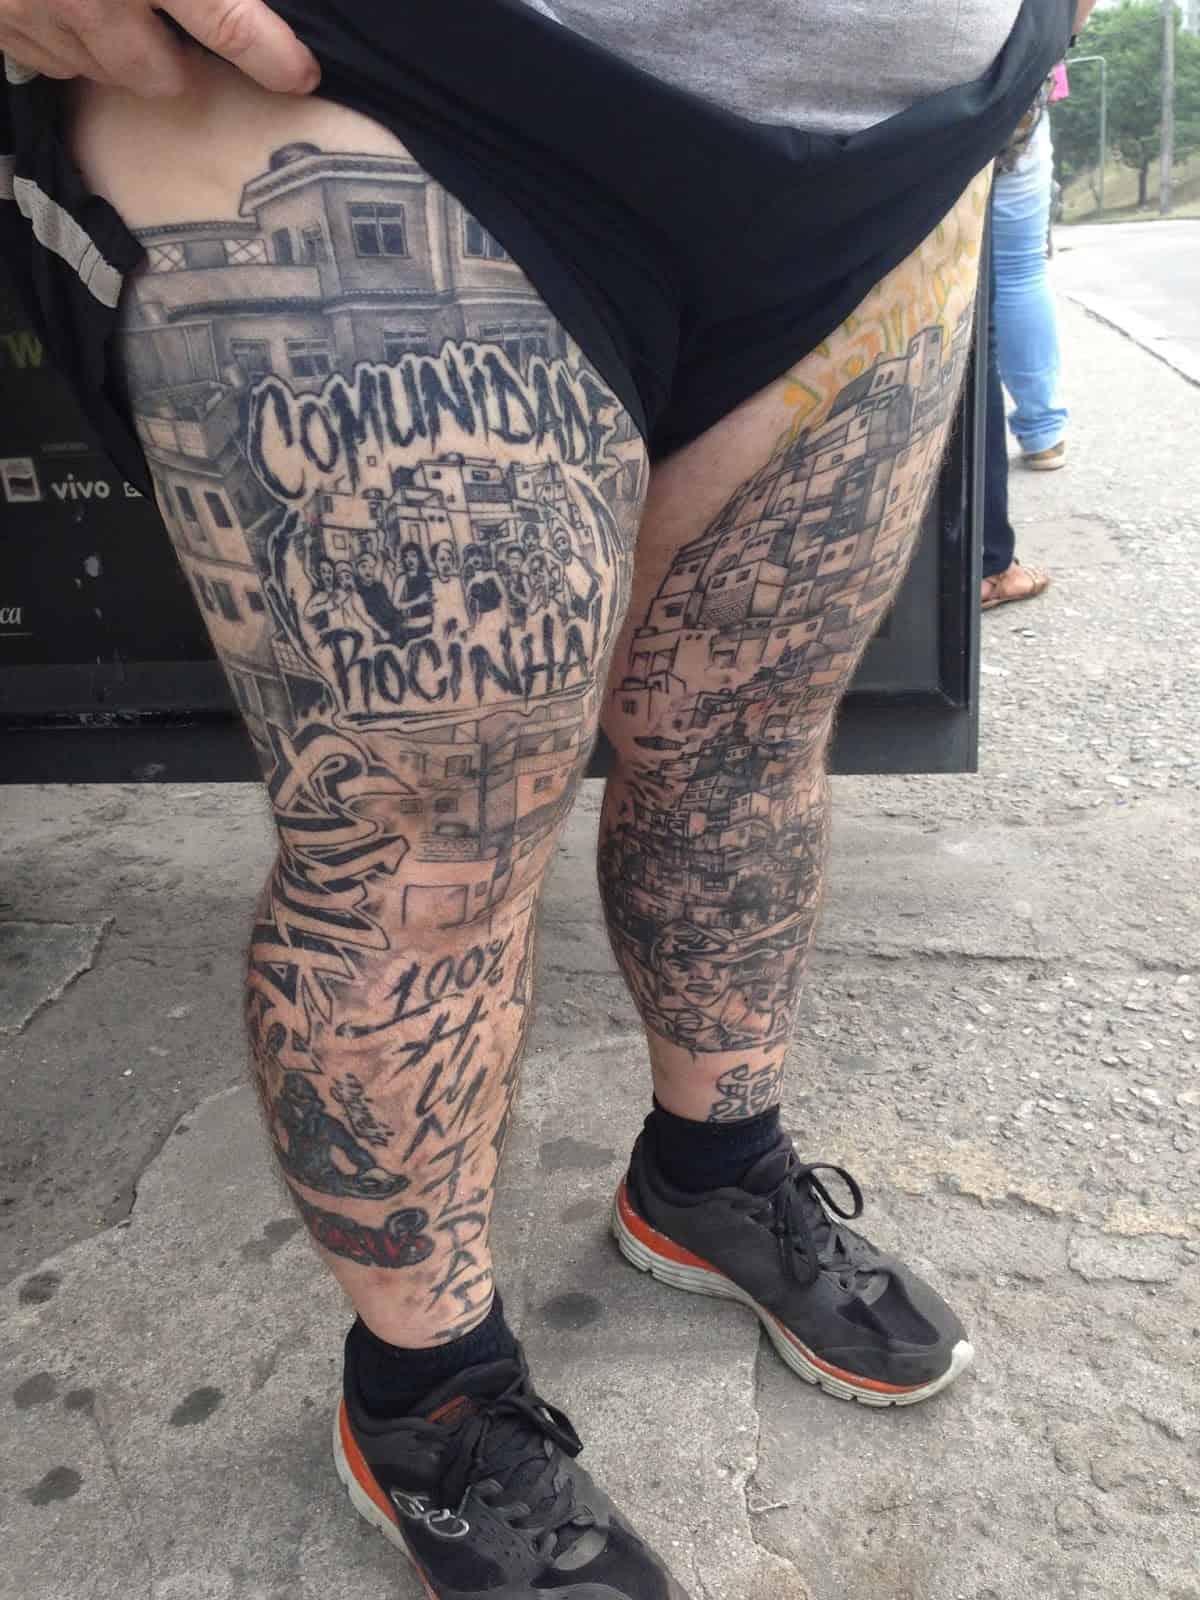 Some of Zezinho’s tattoos at Rocinha favela, Rio de Janeiro, Brazil